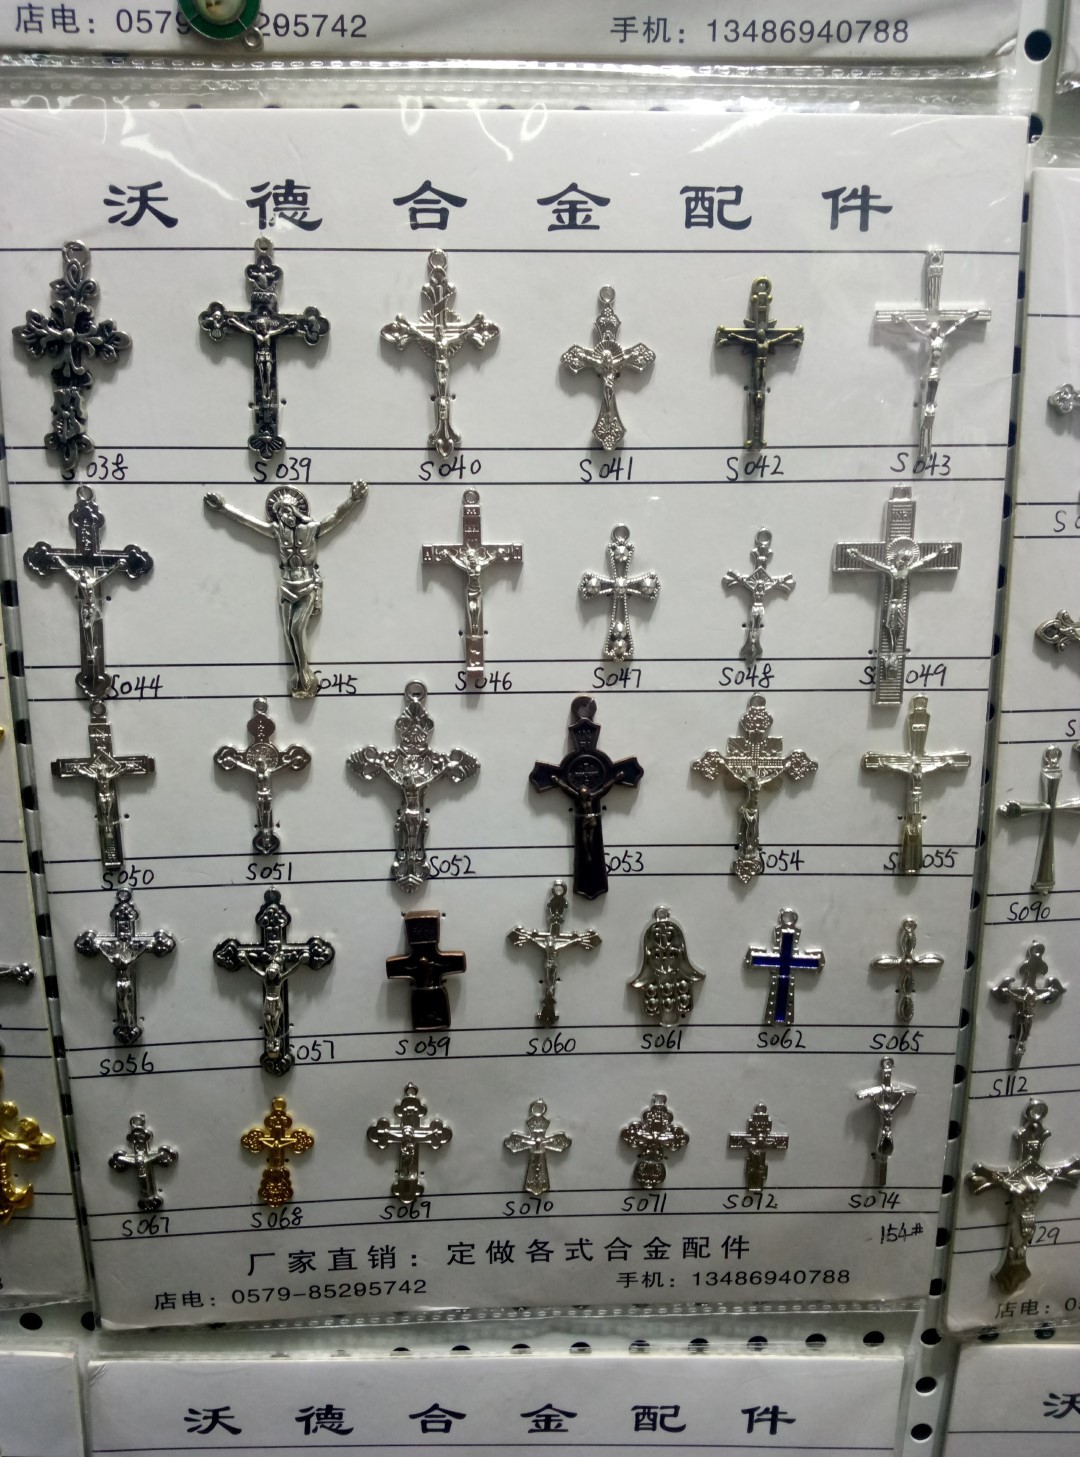 Made in China: виявлено справжнього виробника сувенірів в православних храмах